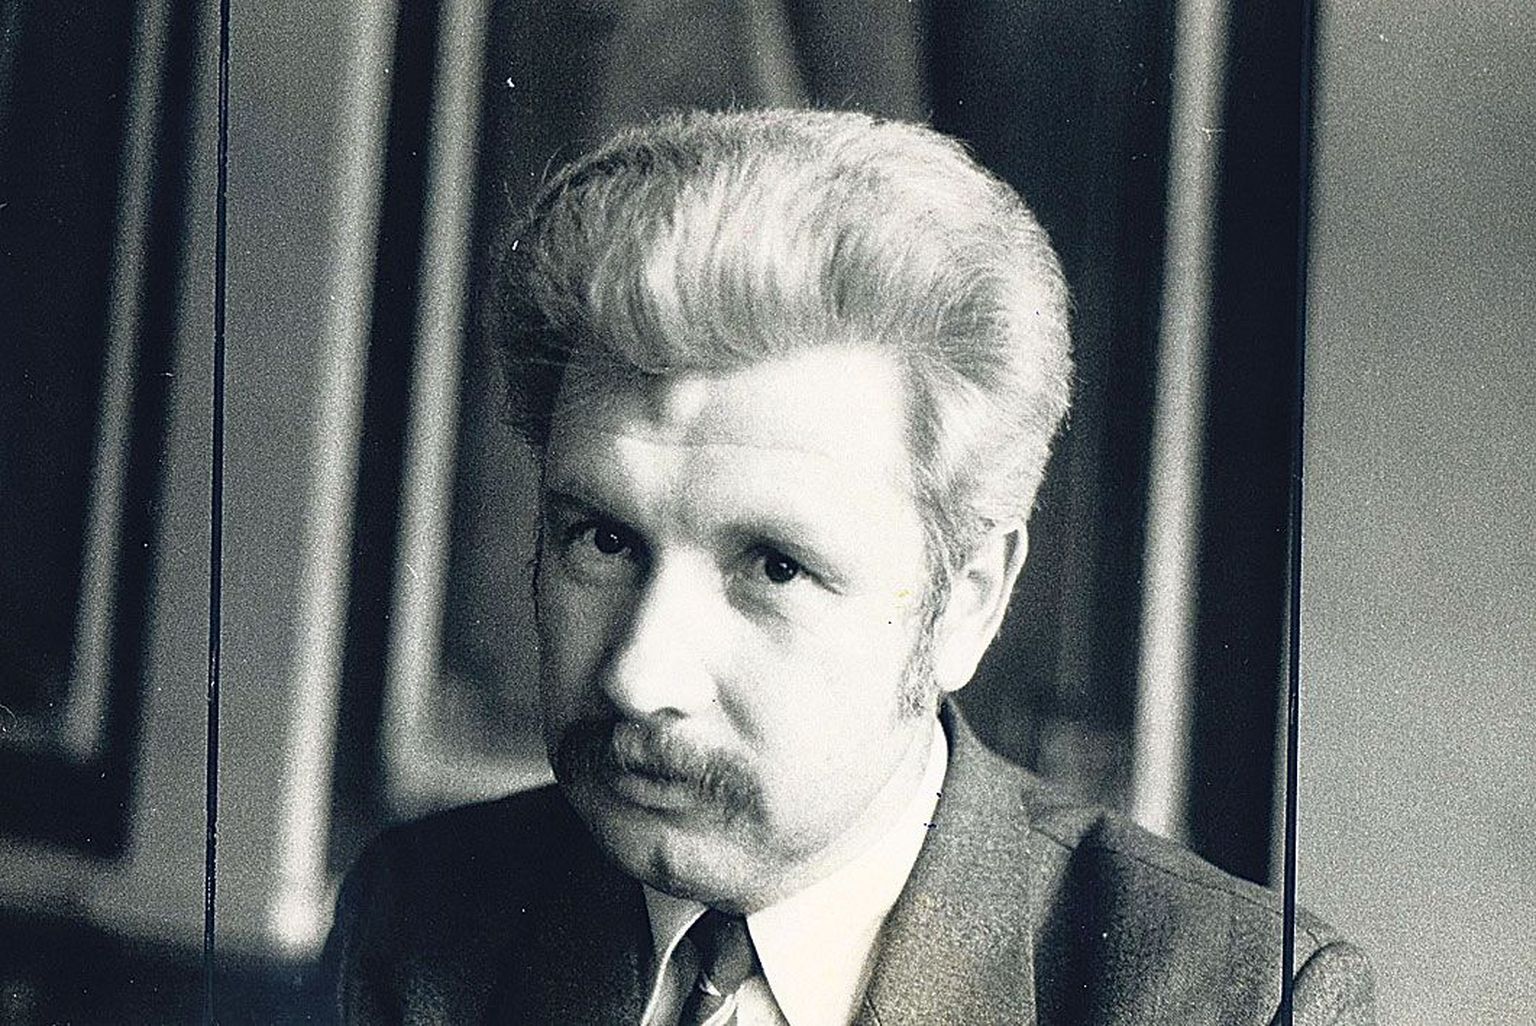 Olev Raju
Tartu linnavolikogu liige aastast 1989